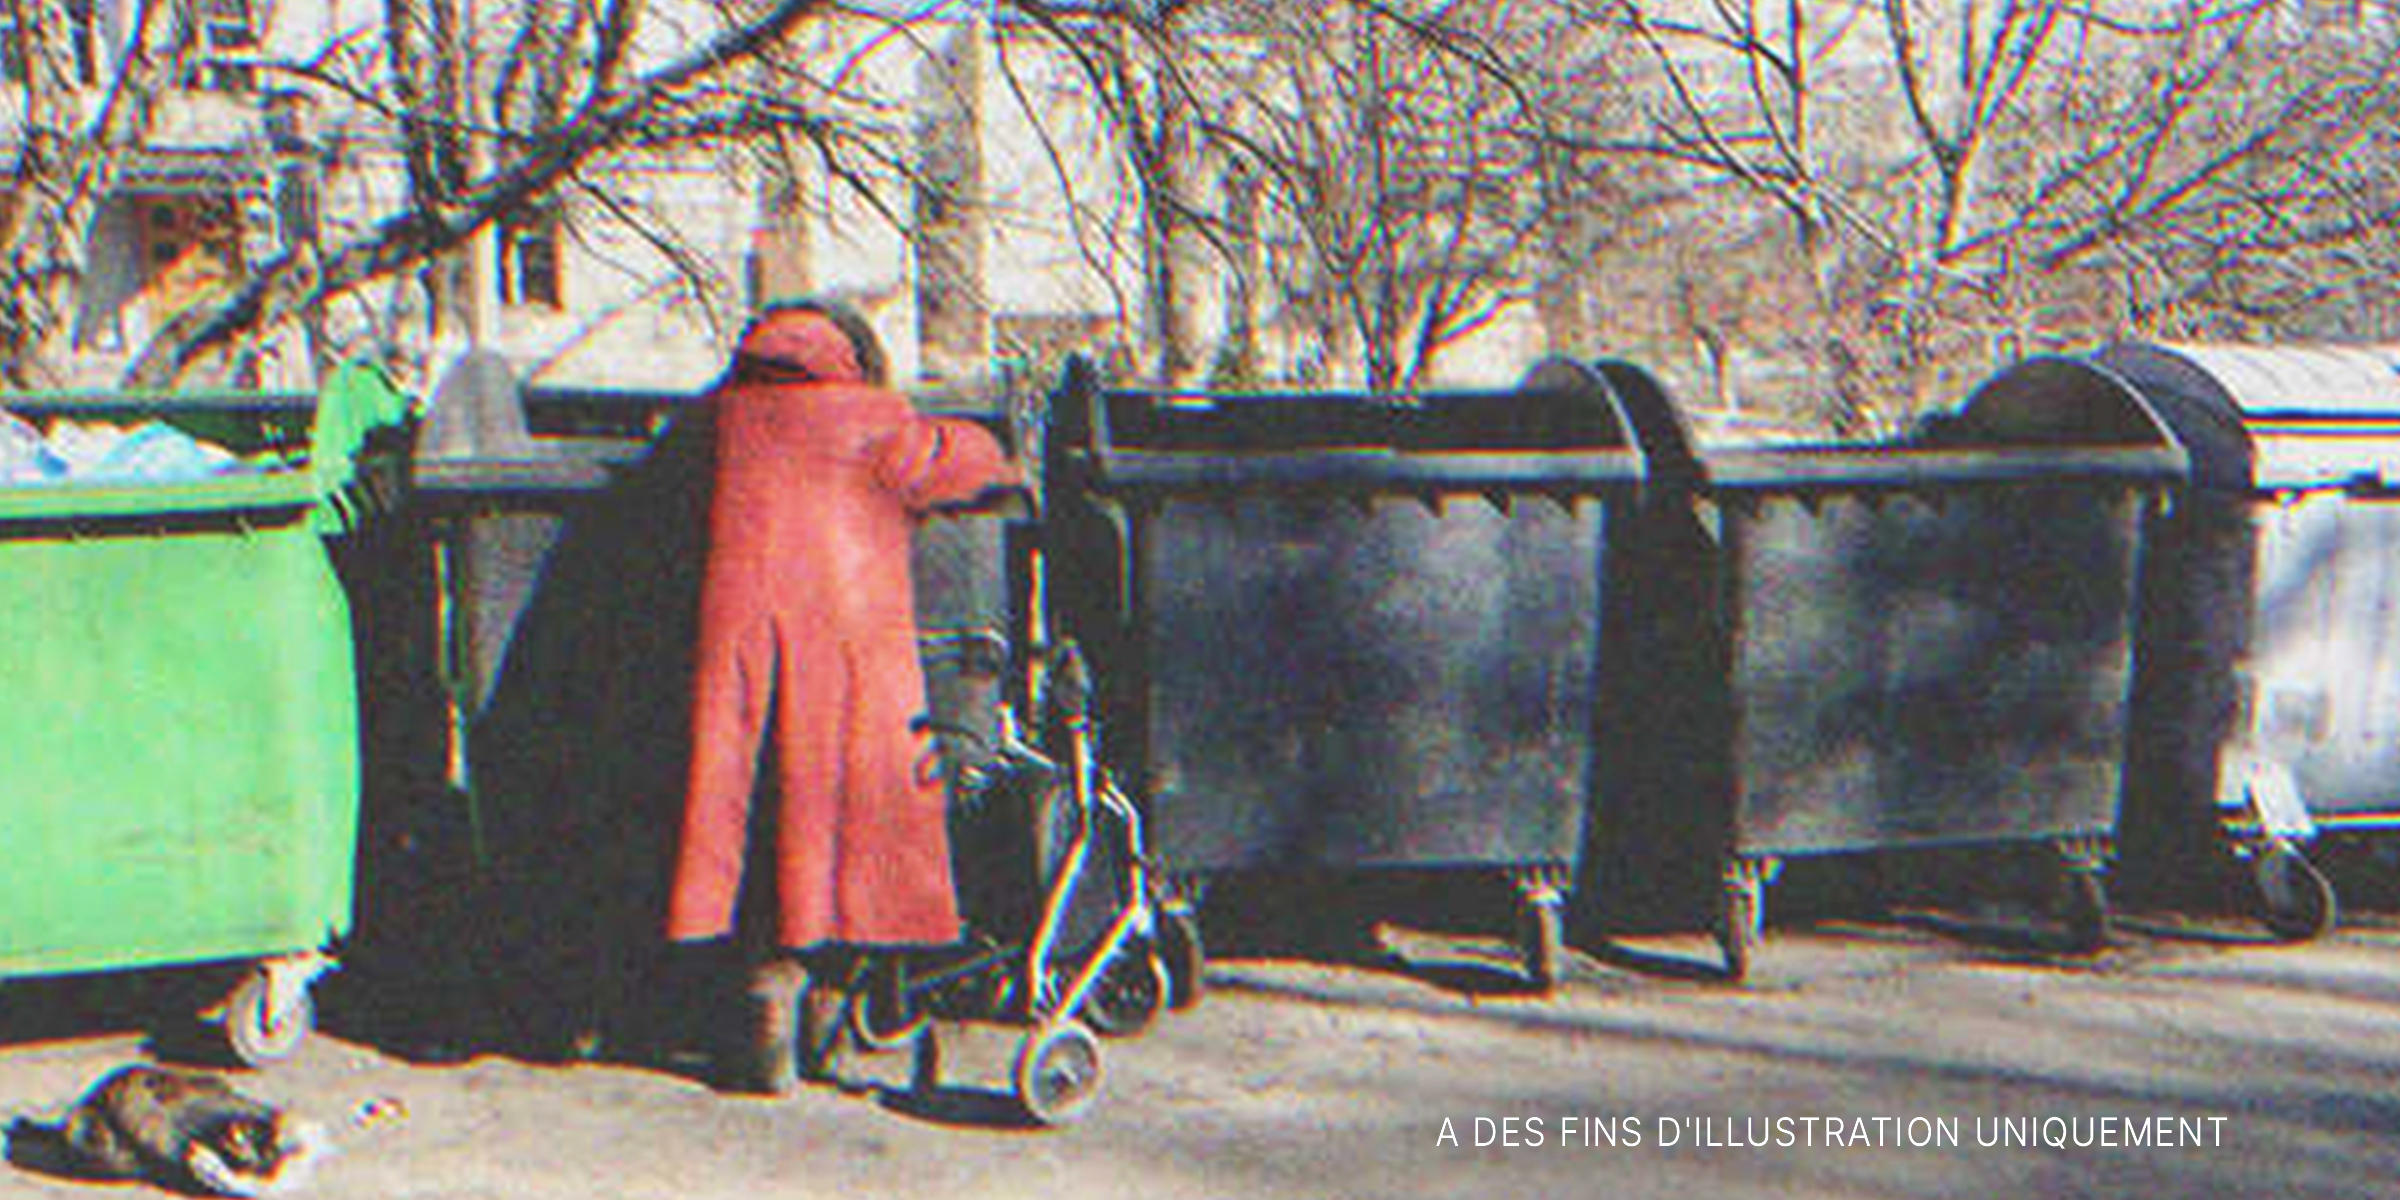 Une femme fouillant les poubelles | Source : Shutterstock